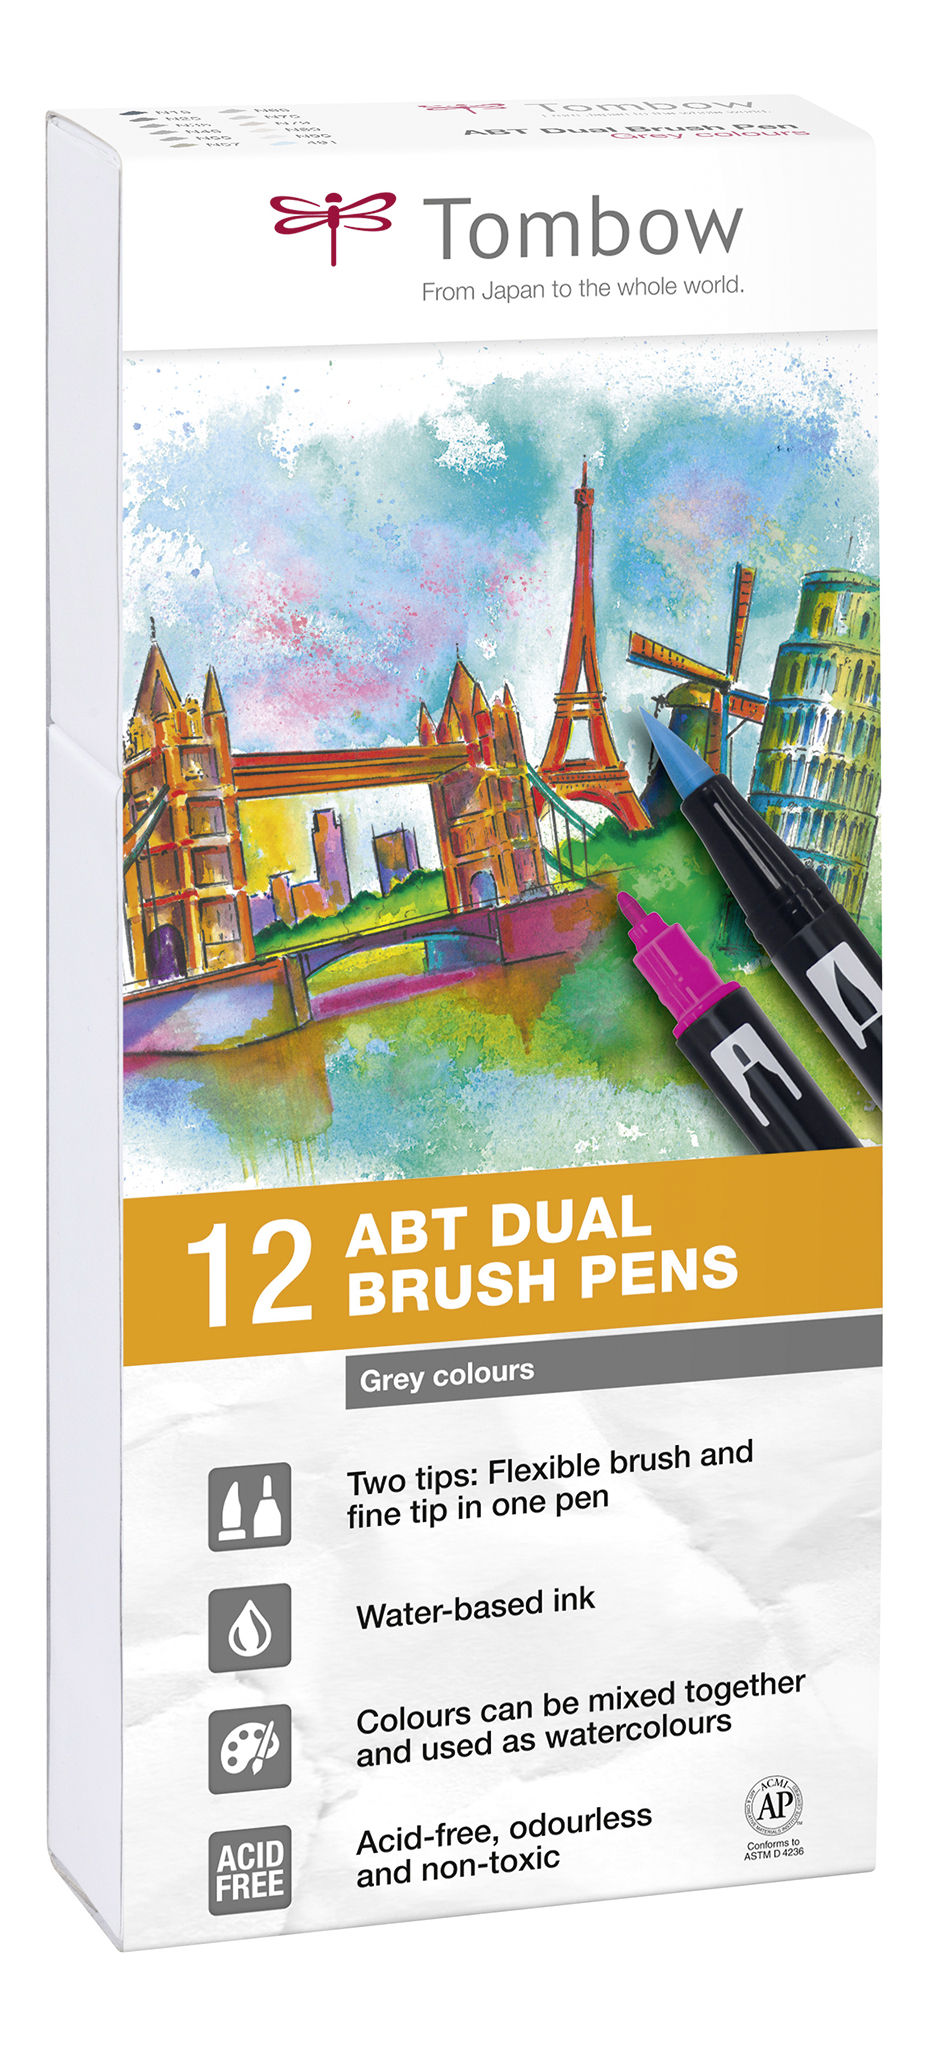 ABT Dual Brush Pen Grey clrs PK12